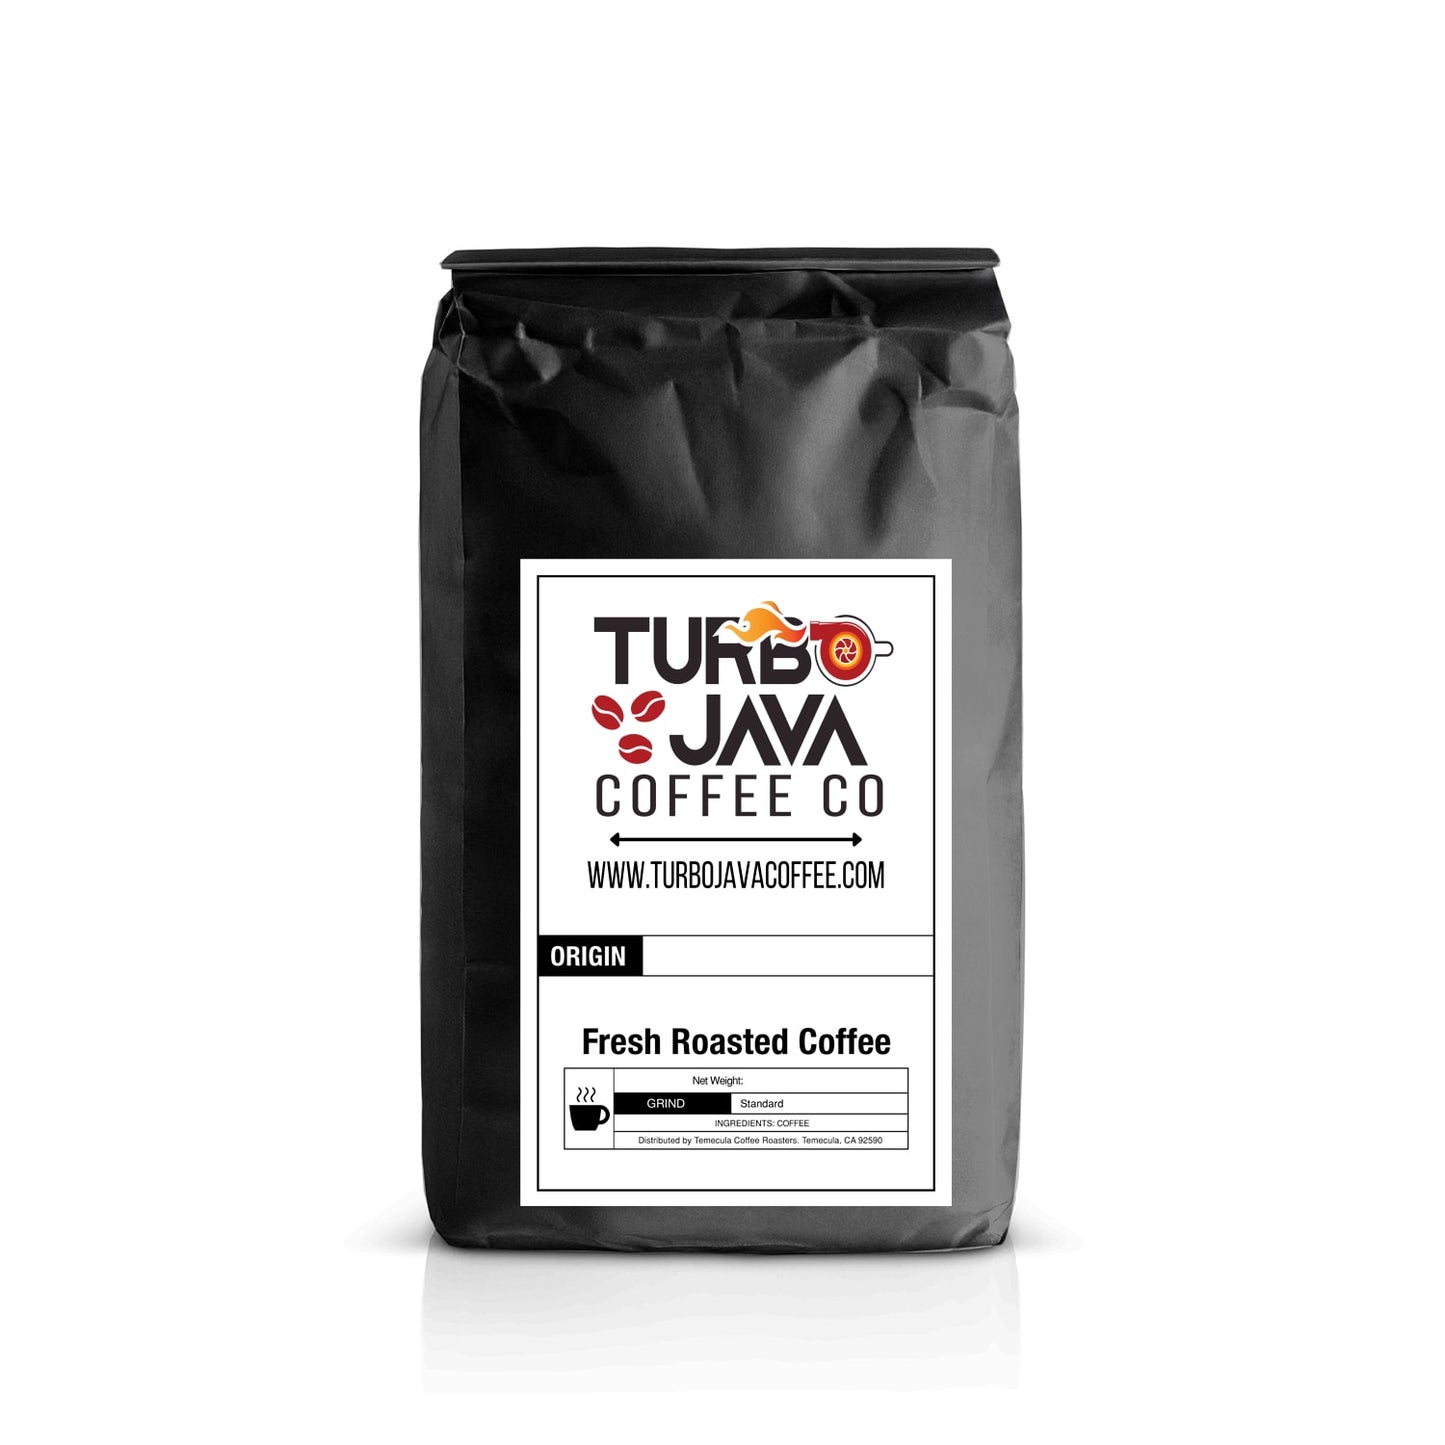 Turbo Java Coffee Co. Colombia Coffee 12 oz / Standard,12 oz / Coarse,12 oz / Espresso,12 oz / Whole Bean,1 lb / Standard,1 lb / Coarse,1 lb / Espresso,1 lb / Whole Bean,2 lb / Standard,2 lb / Coarse,2 lb / Espresso,2 lb / Whole Bean,5 lb / Standard,5 lb / Coarse,5 lb / Espresso,5 lb / Whole Bean,12 lb / Standard,12 lb / Coarse,12 lb / Espresso,12 lb / Whole Bean